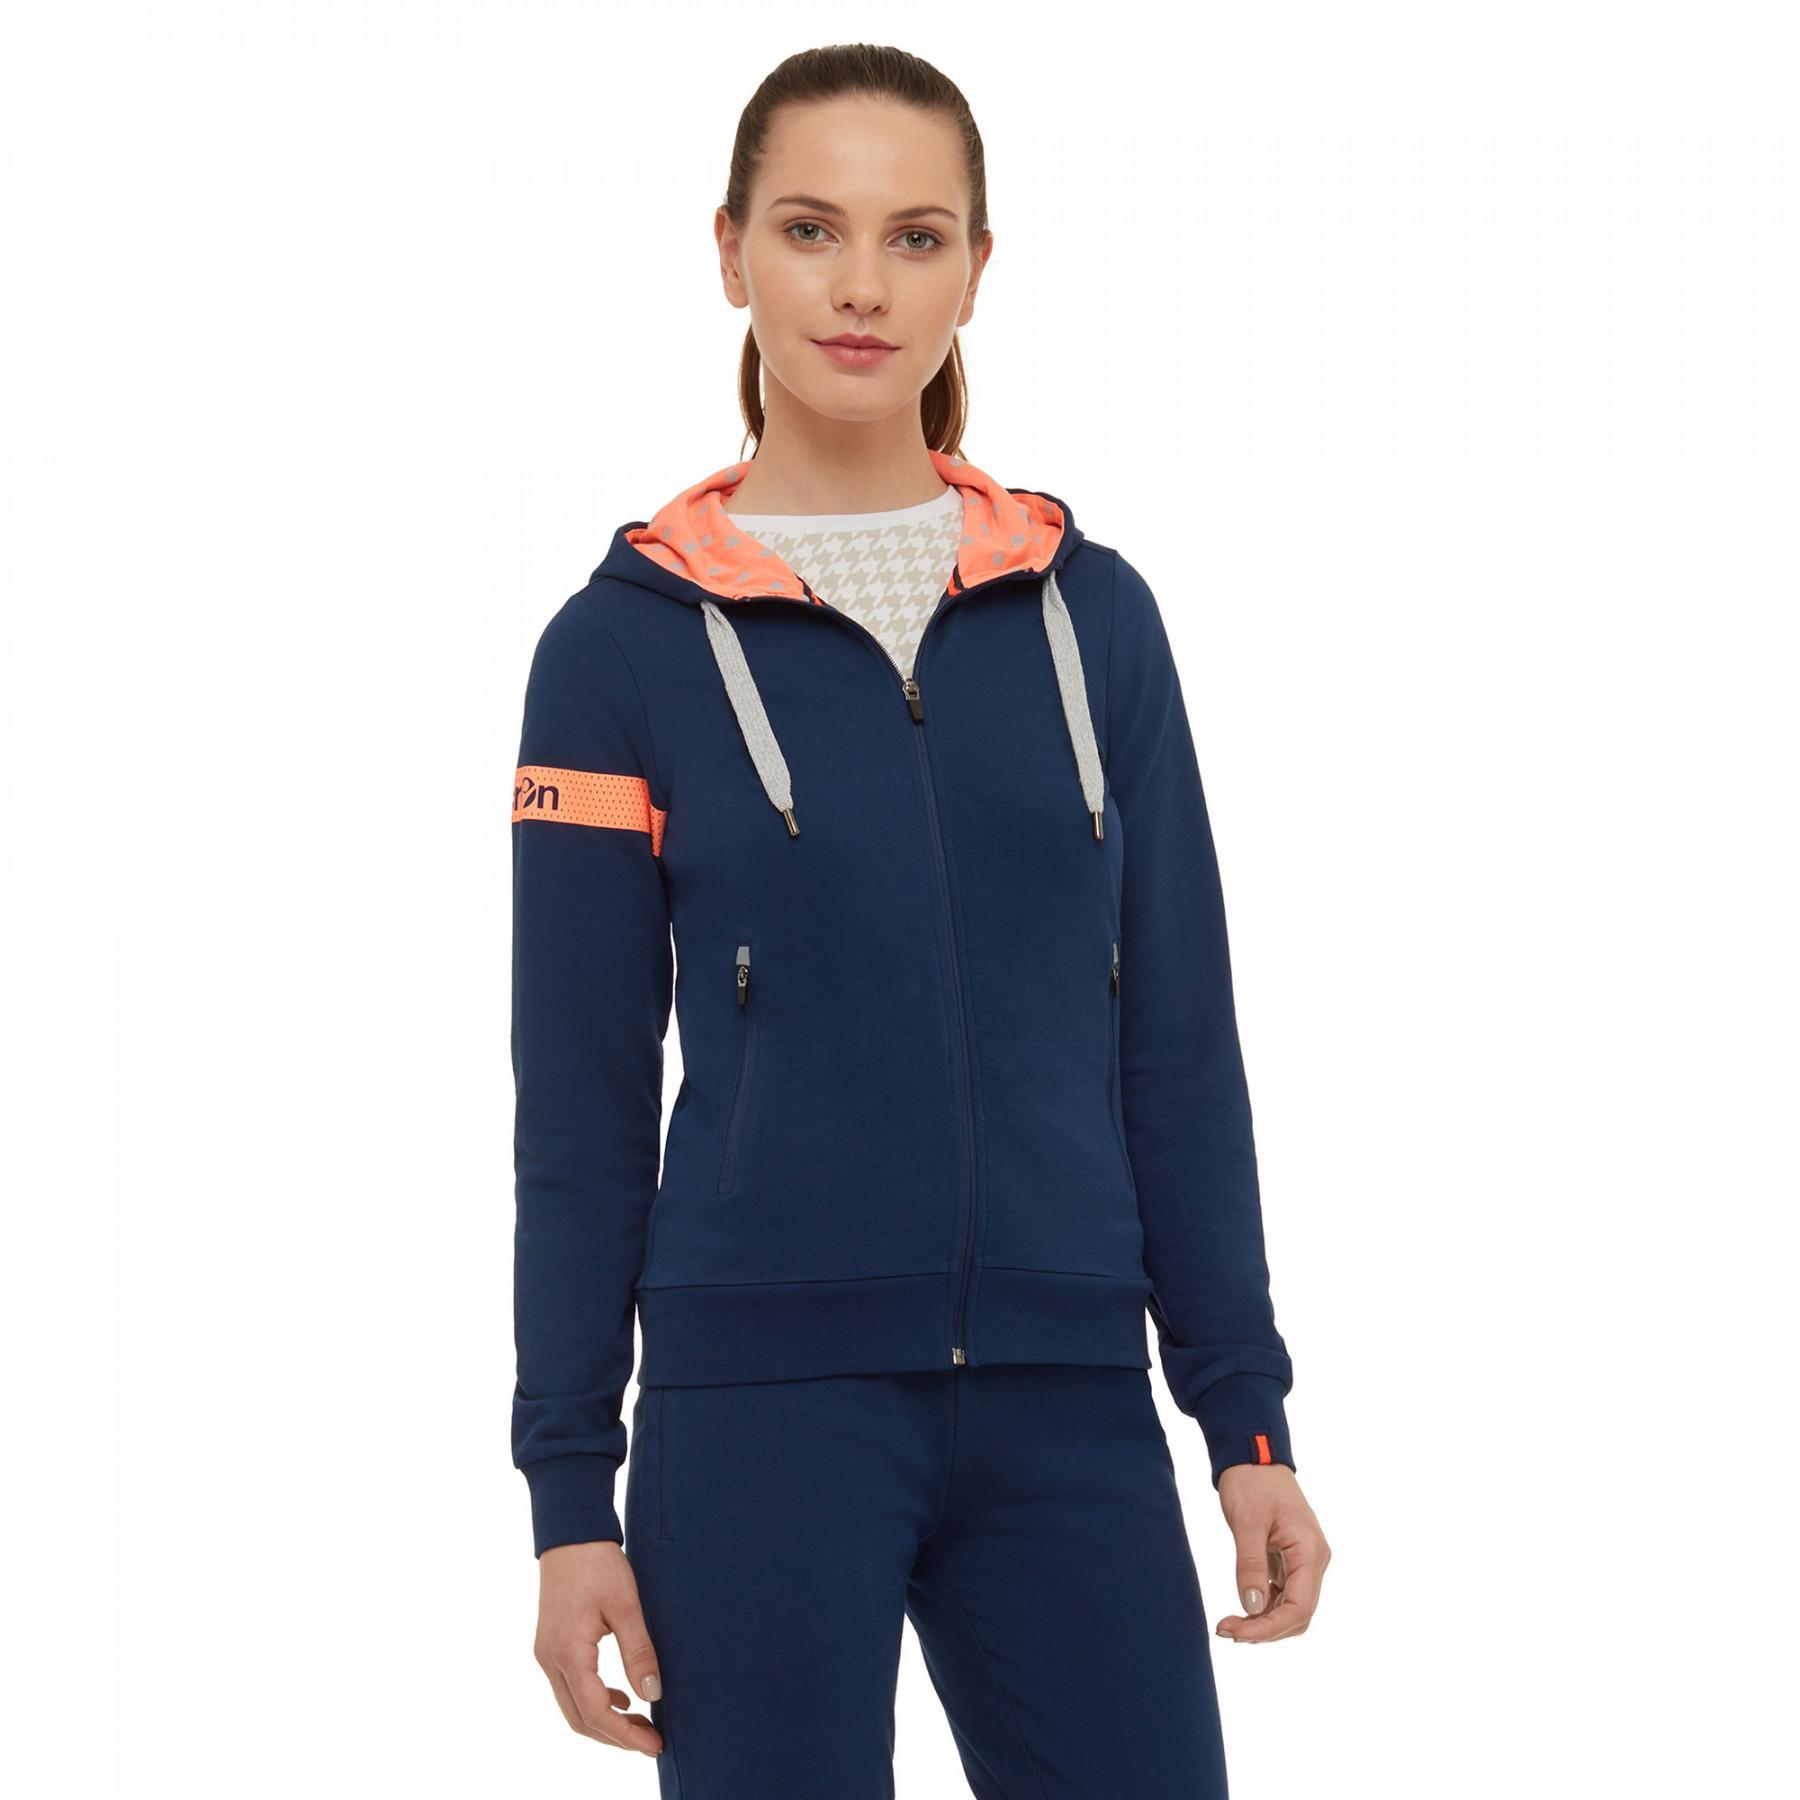 Women's zip-up sweatshirt Macron sportswear sofia